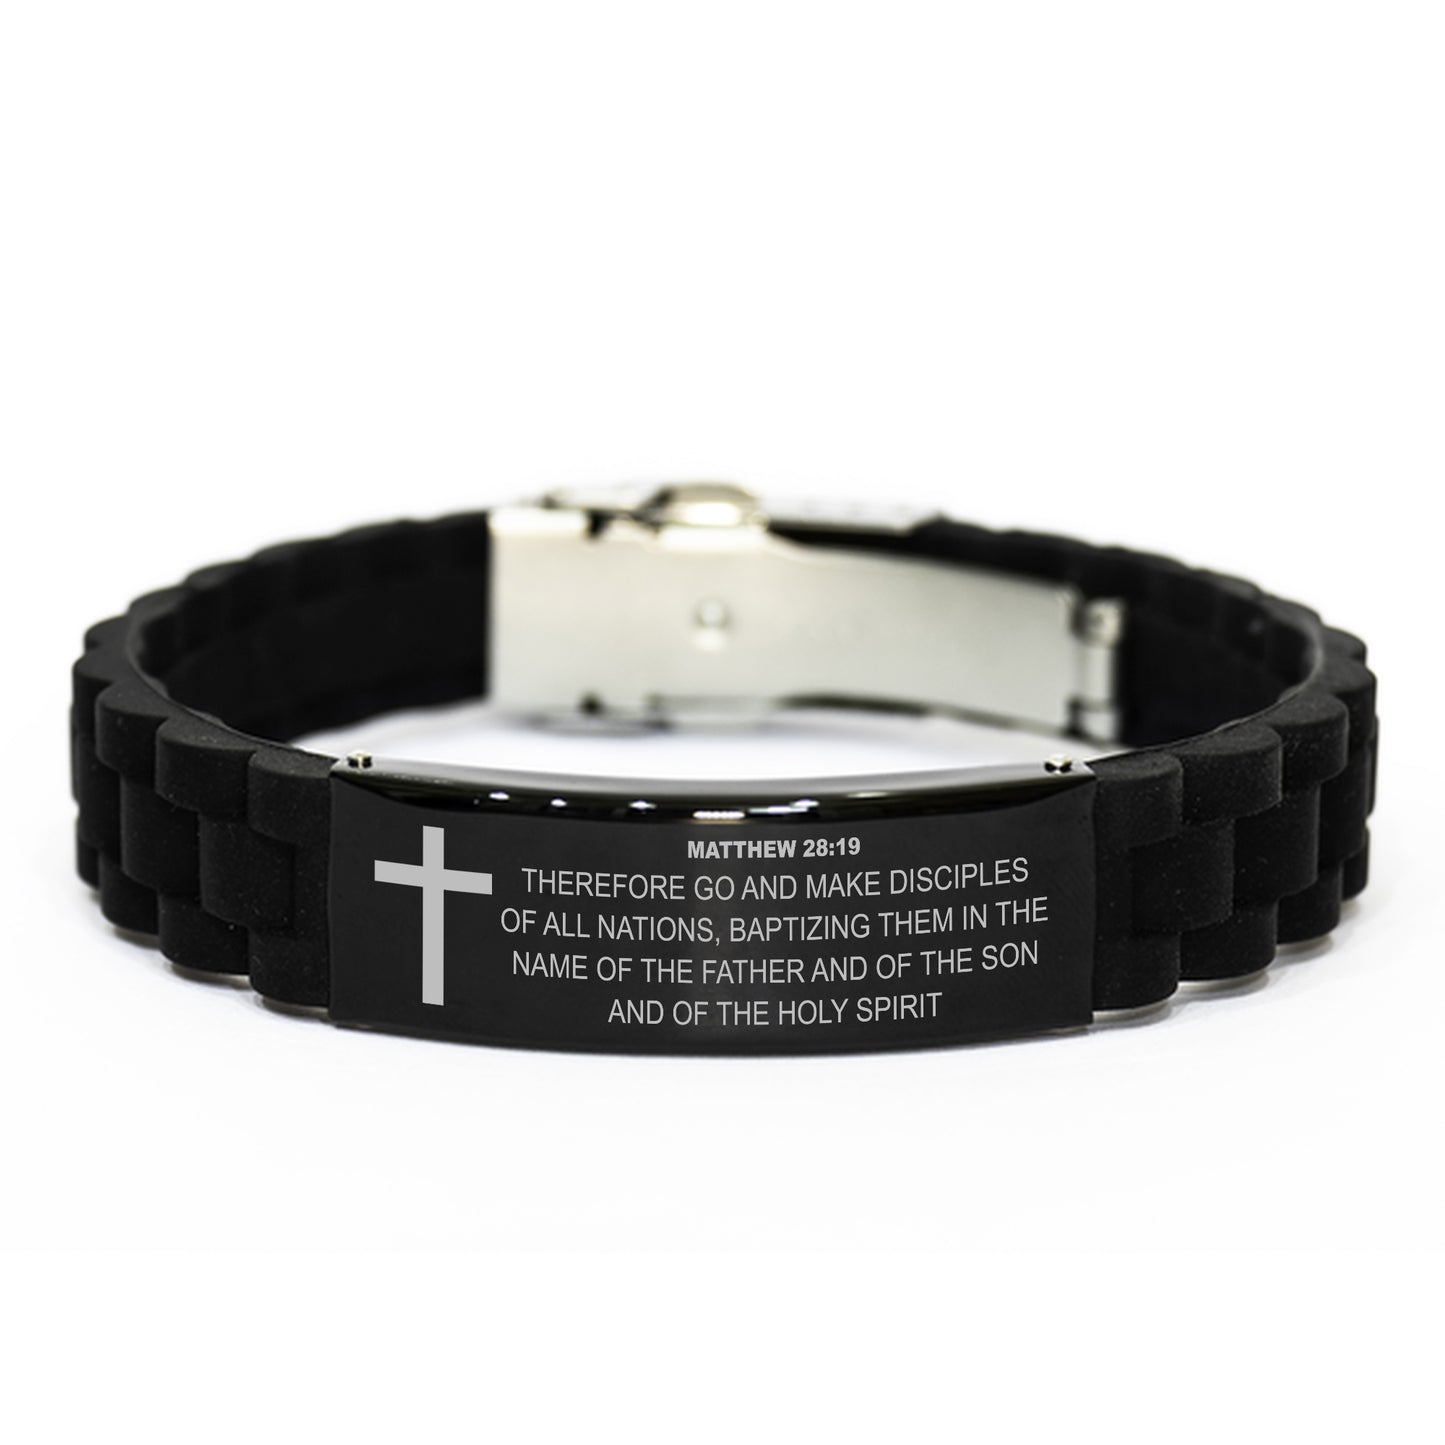 Matthew 28 19 Bracelet, Bible Verse Bracelet, Christian Bracelet, Black Stainless Steel Silicone Bracelet, Gift for Christian